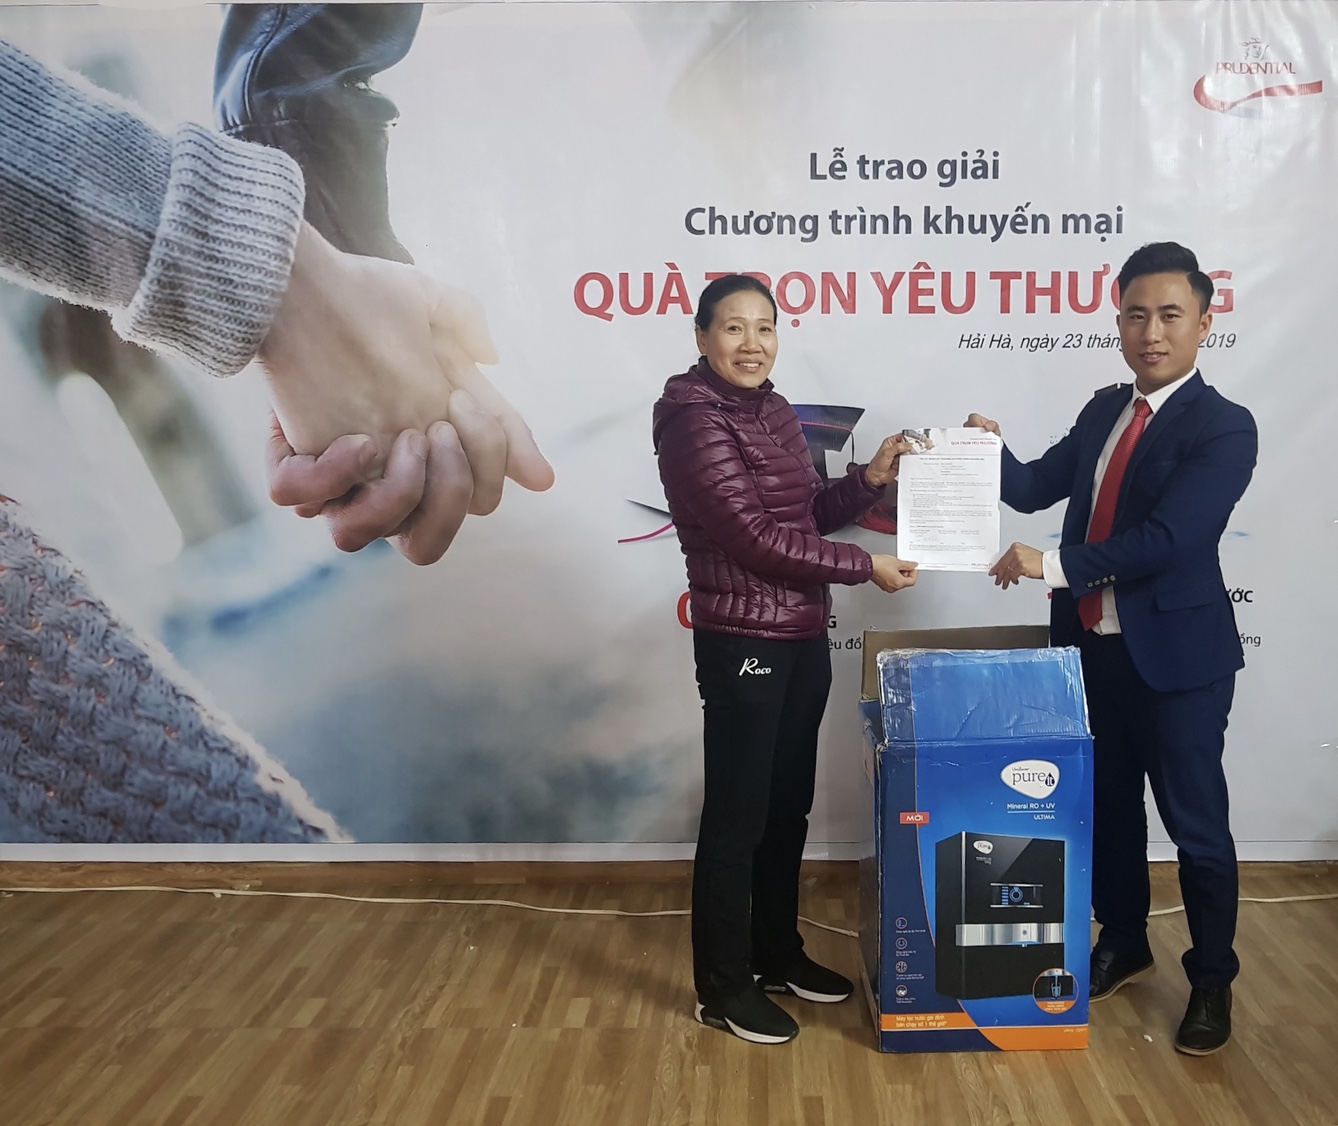 Các khách hàng tại Quảng Ninh đã may mắn trúng giải của chương trình “Quà Trọn Yêu Thương” của Prudential.